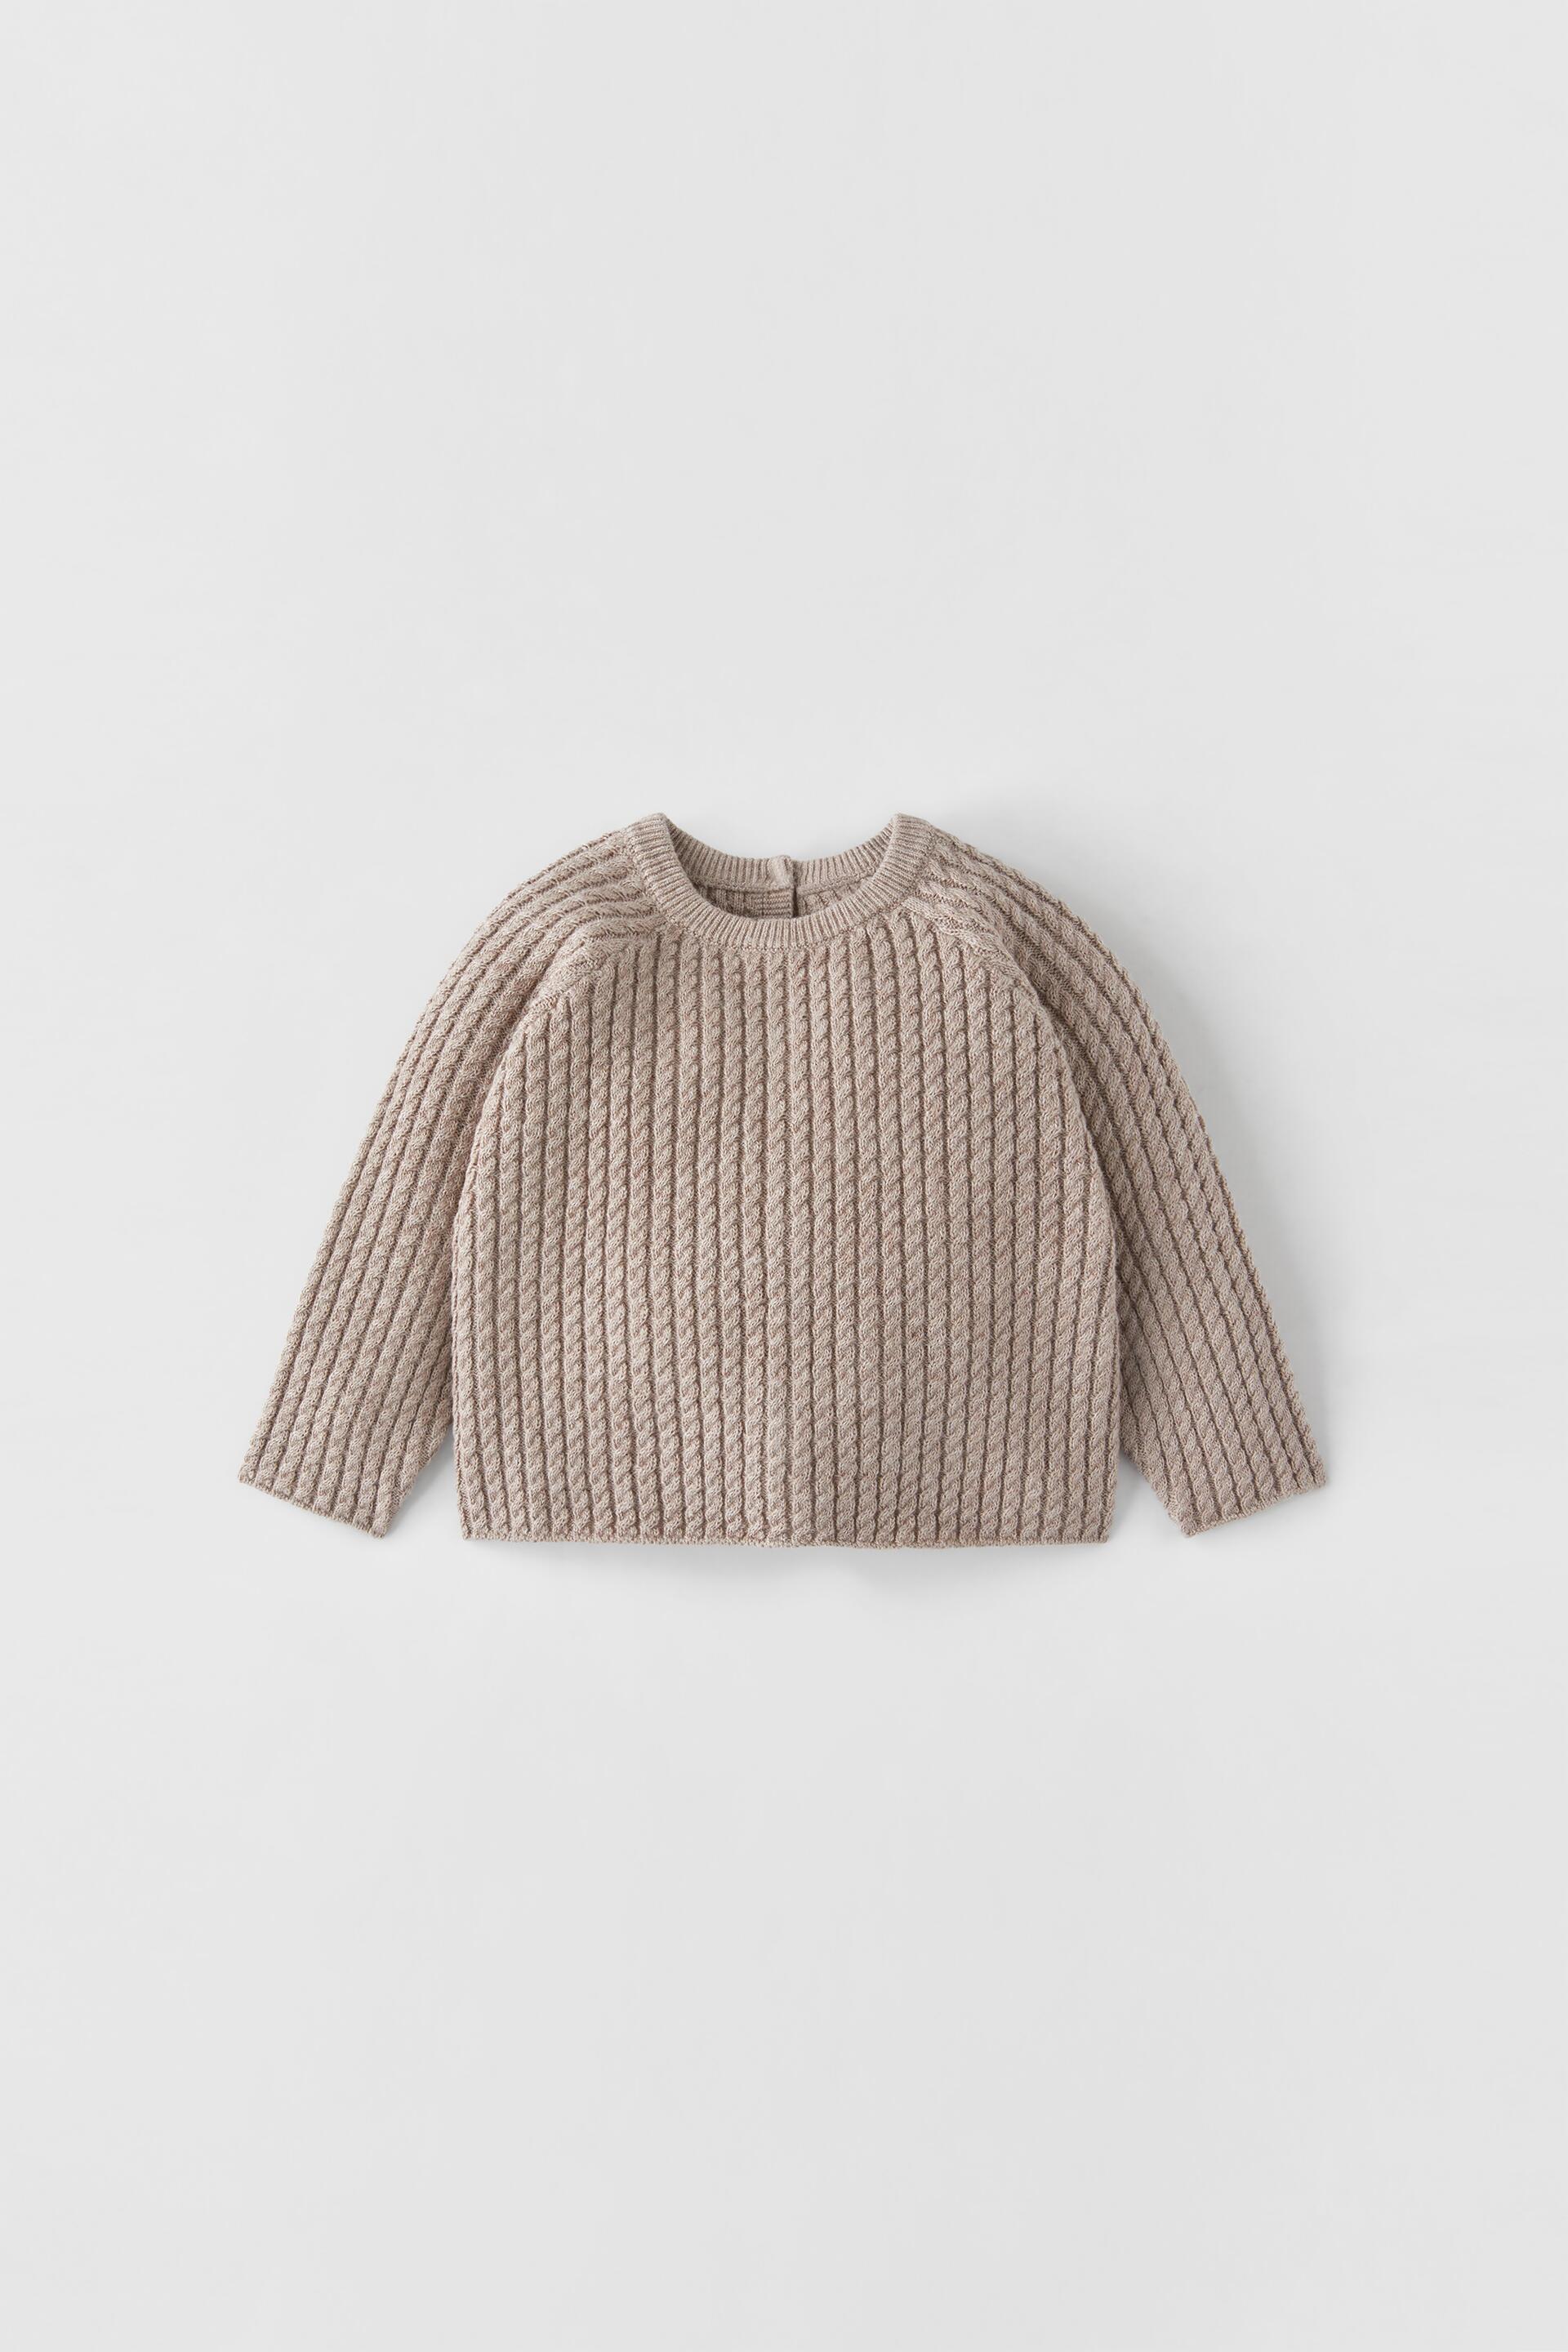 ZARA Mini Eights Sweater